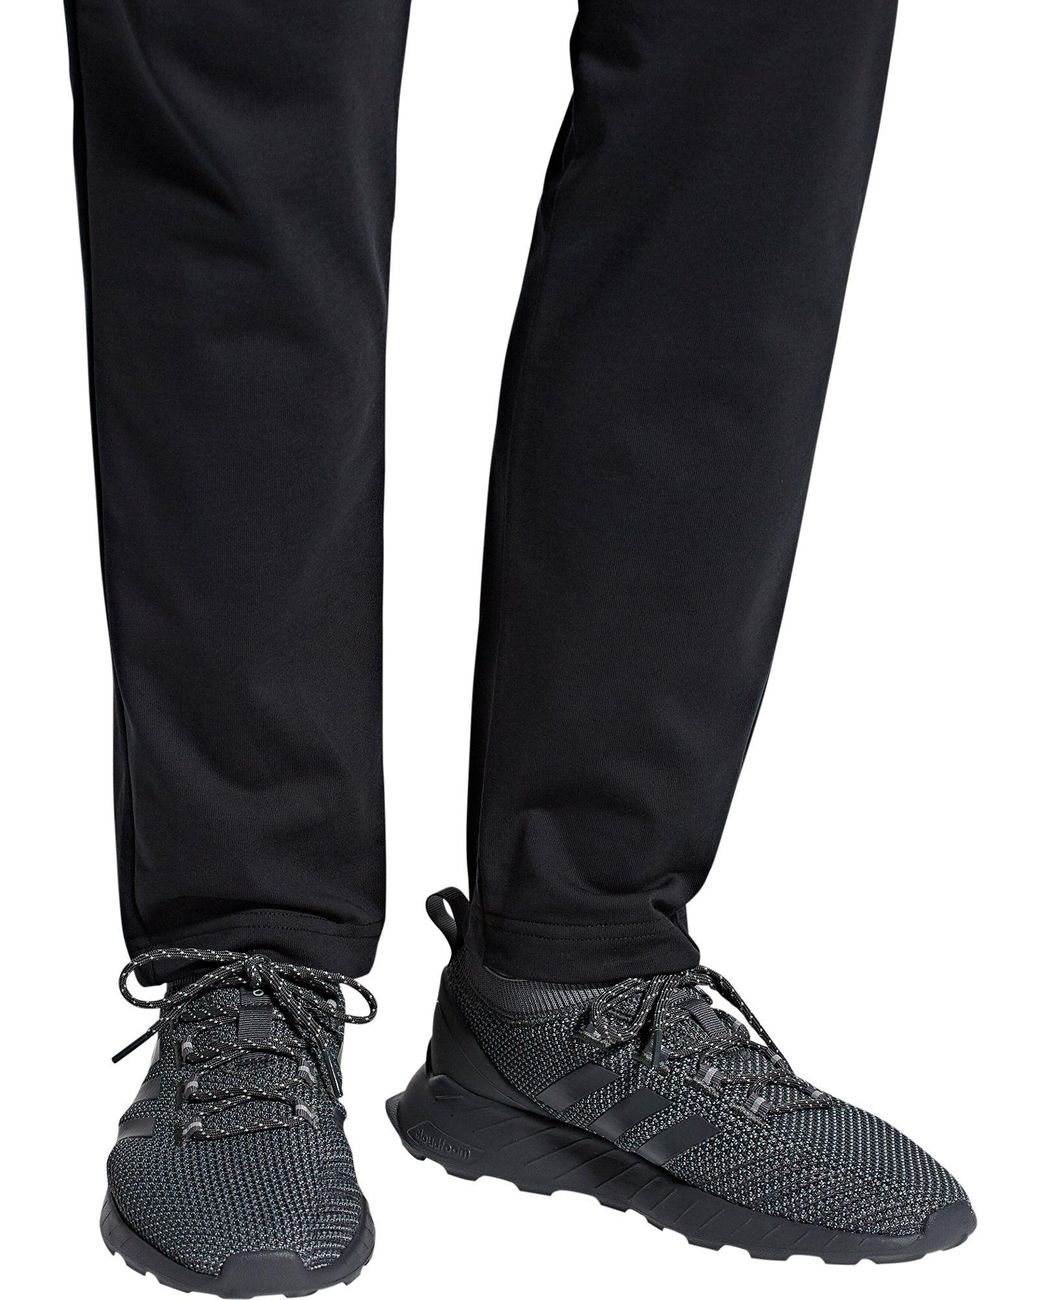 adidas Questar Rise Shoes in Grey/Grey 